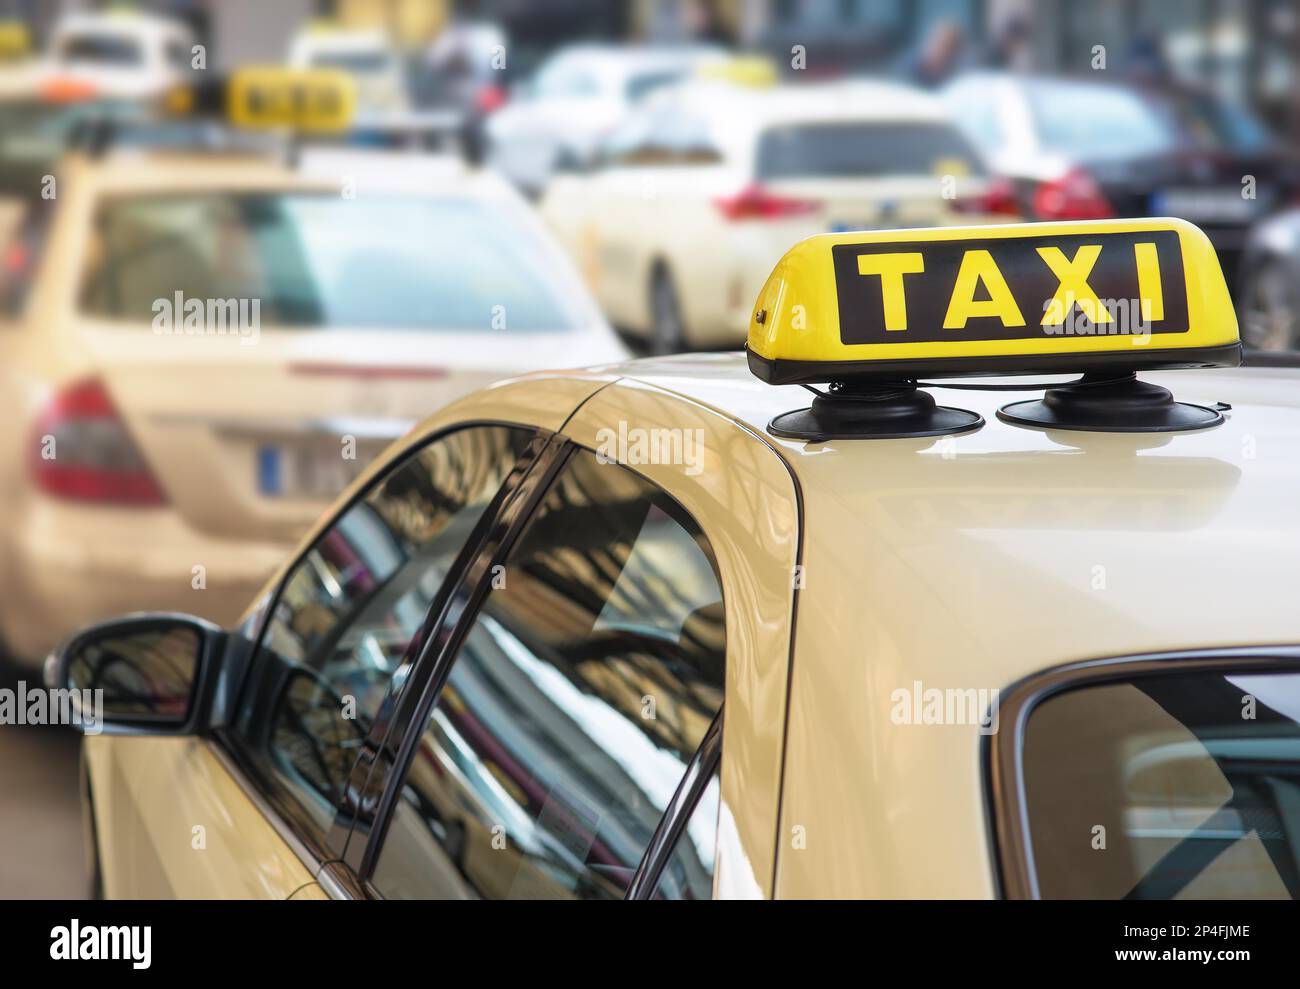 panneau taxi en haut d'une voiture Banque D'Images